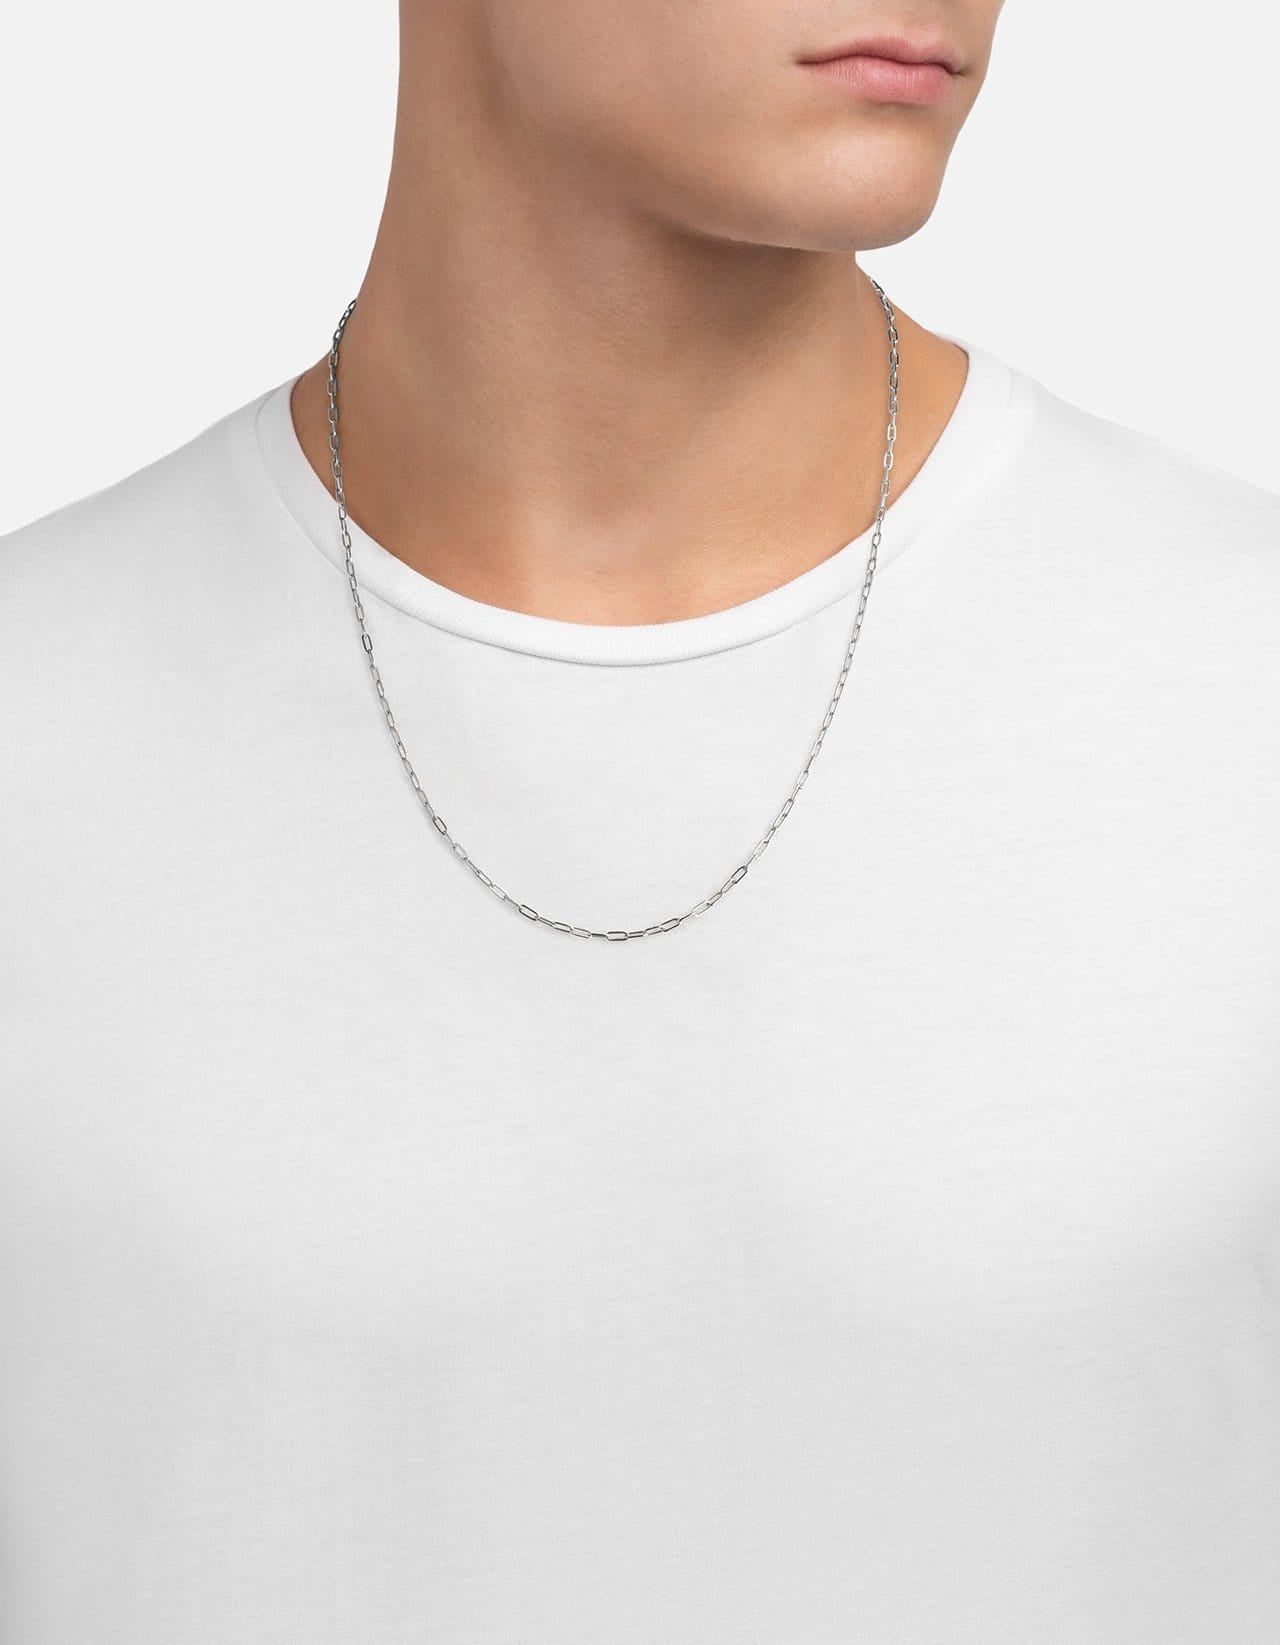 Miansai Men's 2.5mm Cable Chain Necklace